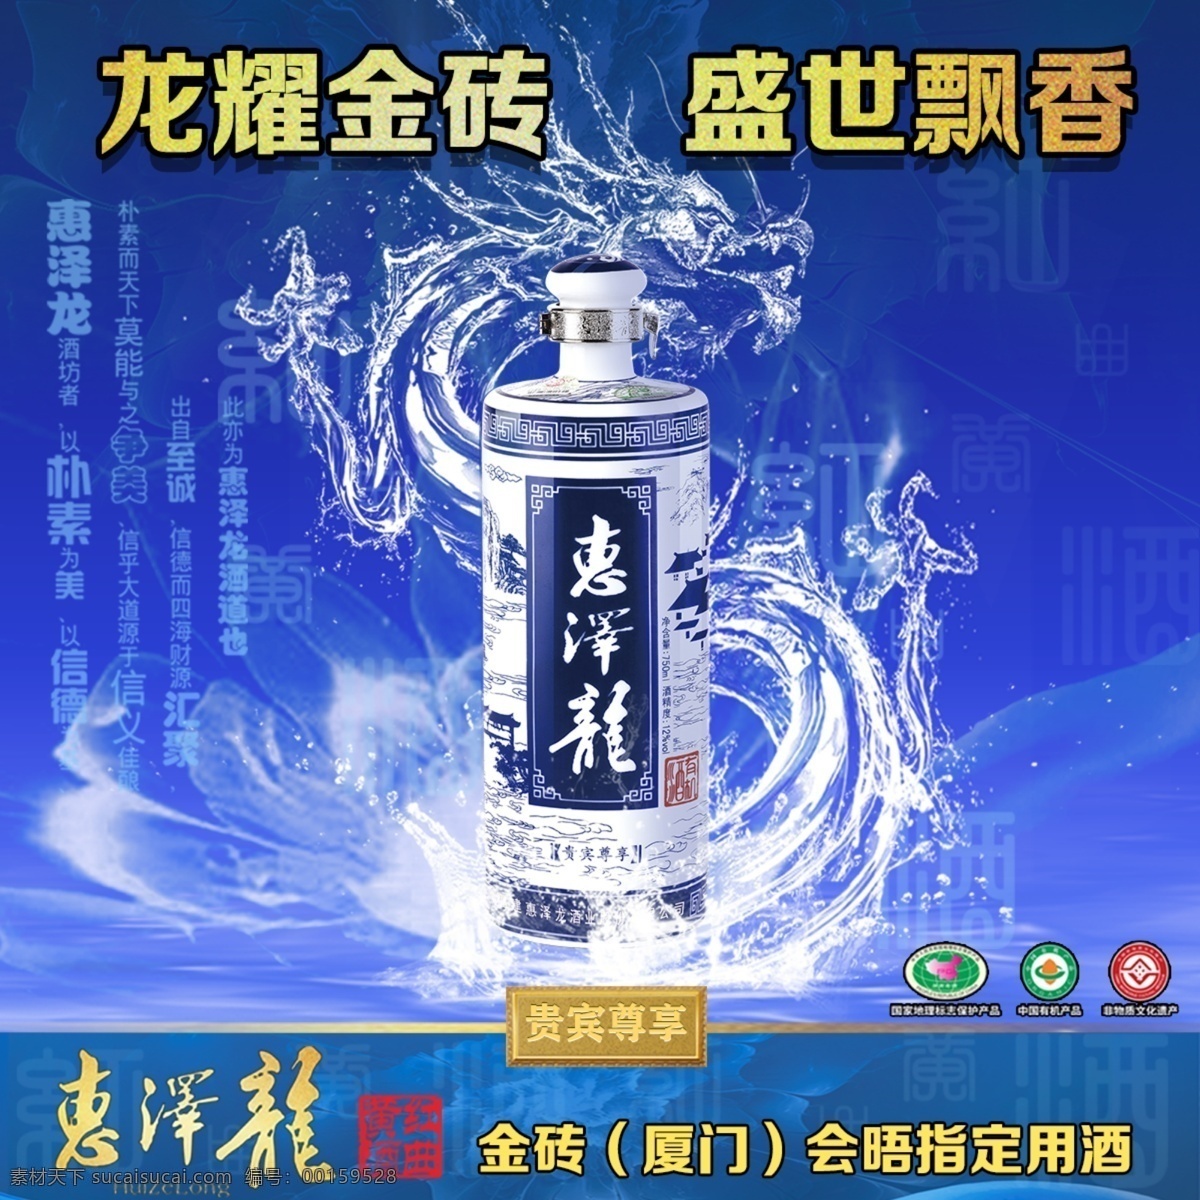 惠泽 龙 黄酒 广告 酒广告设计 水龙 水纹 陶瓷